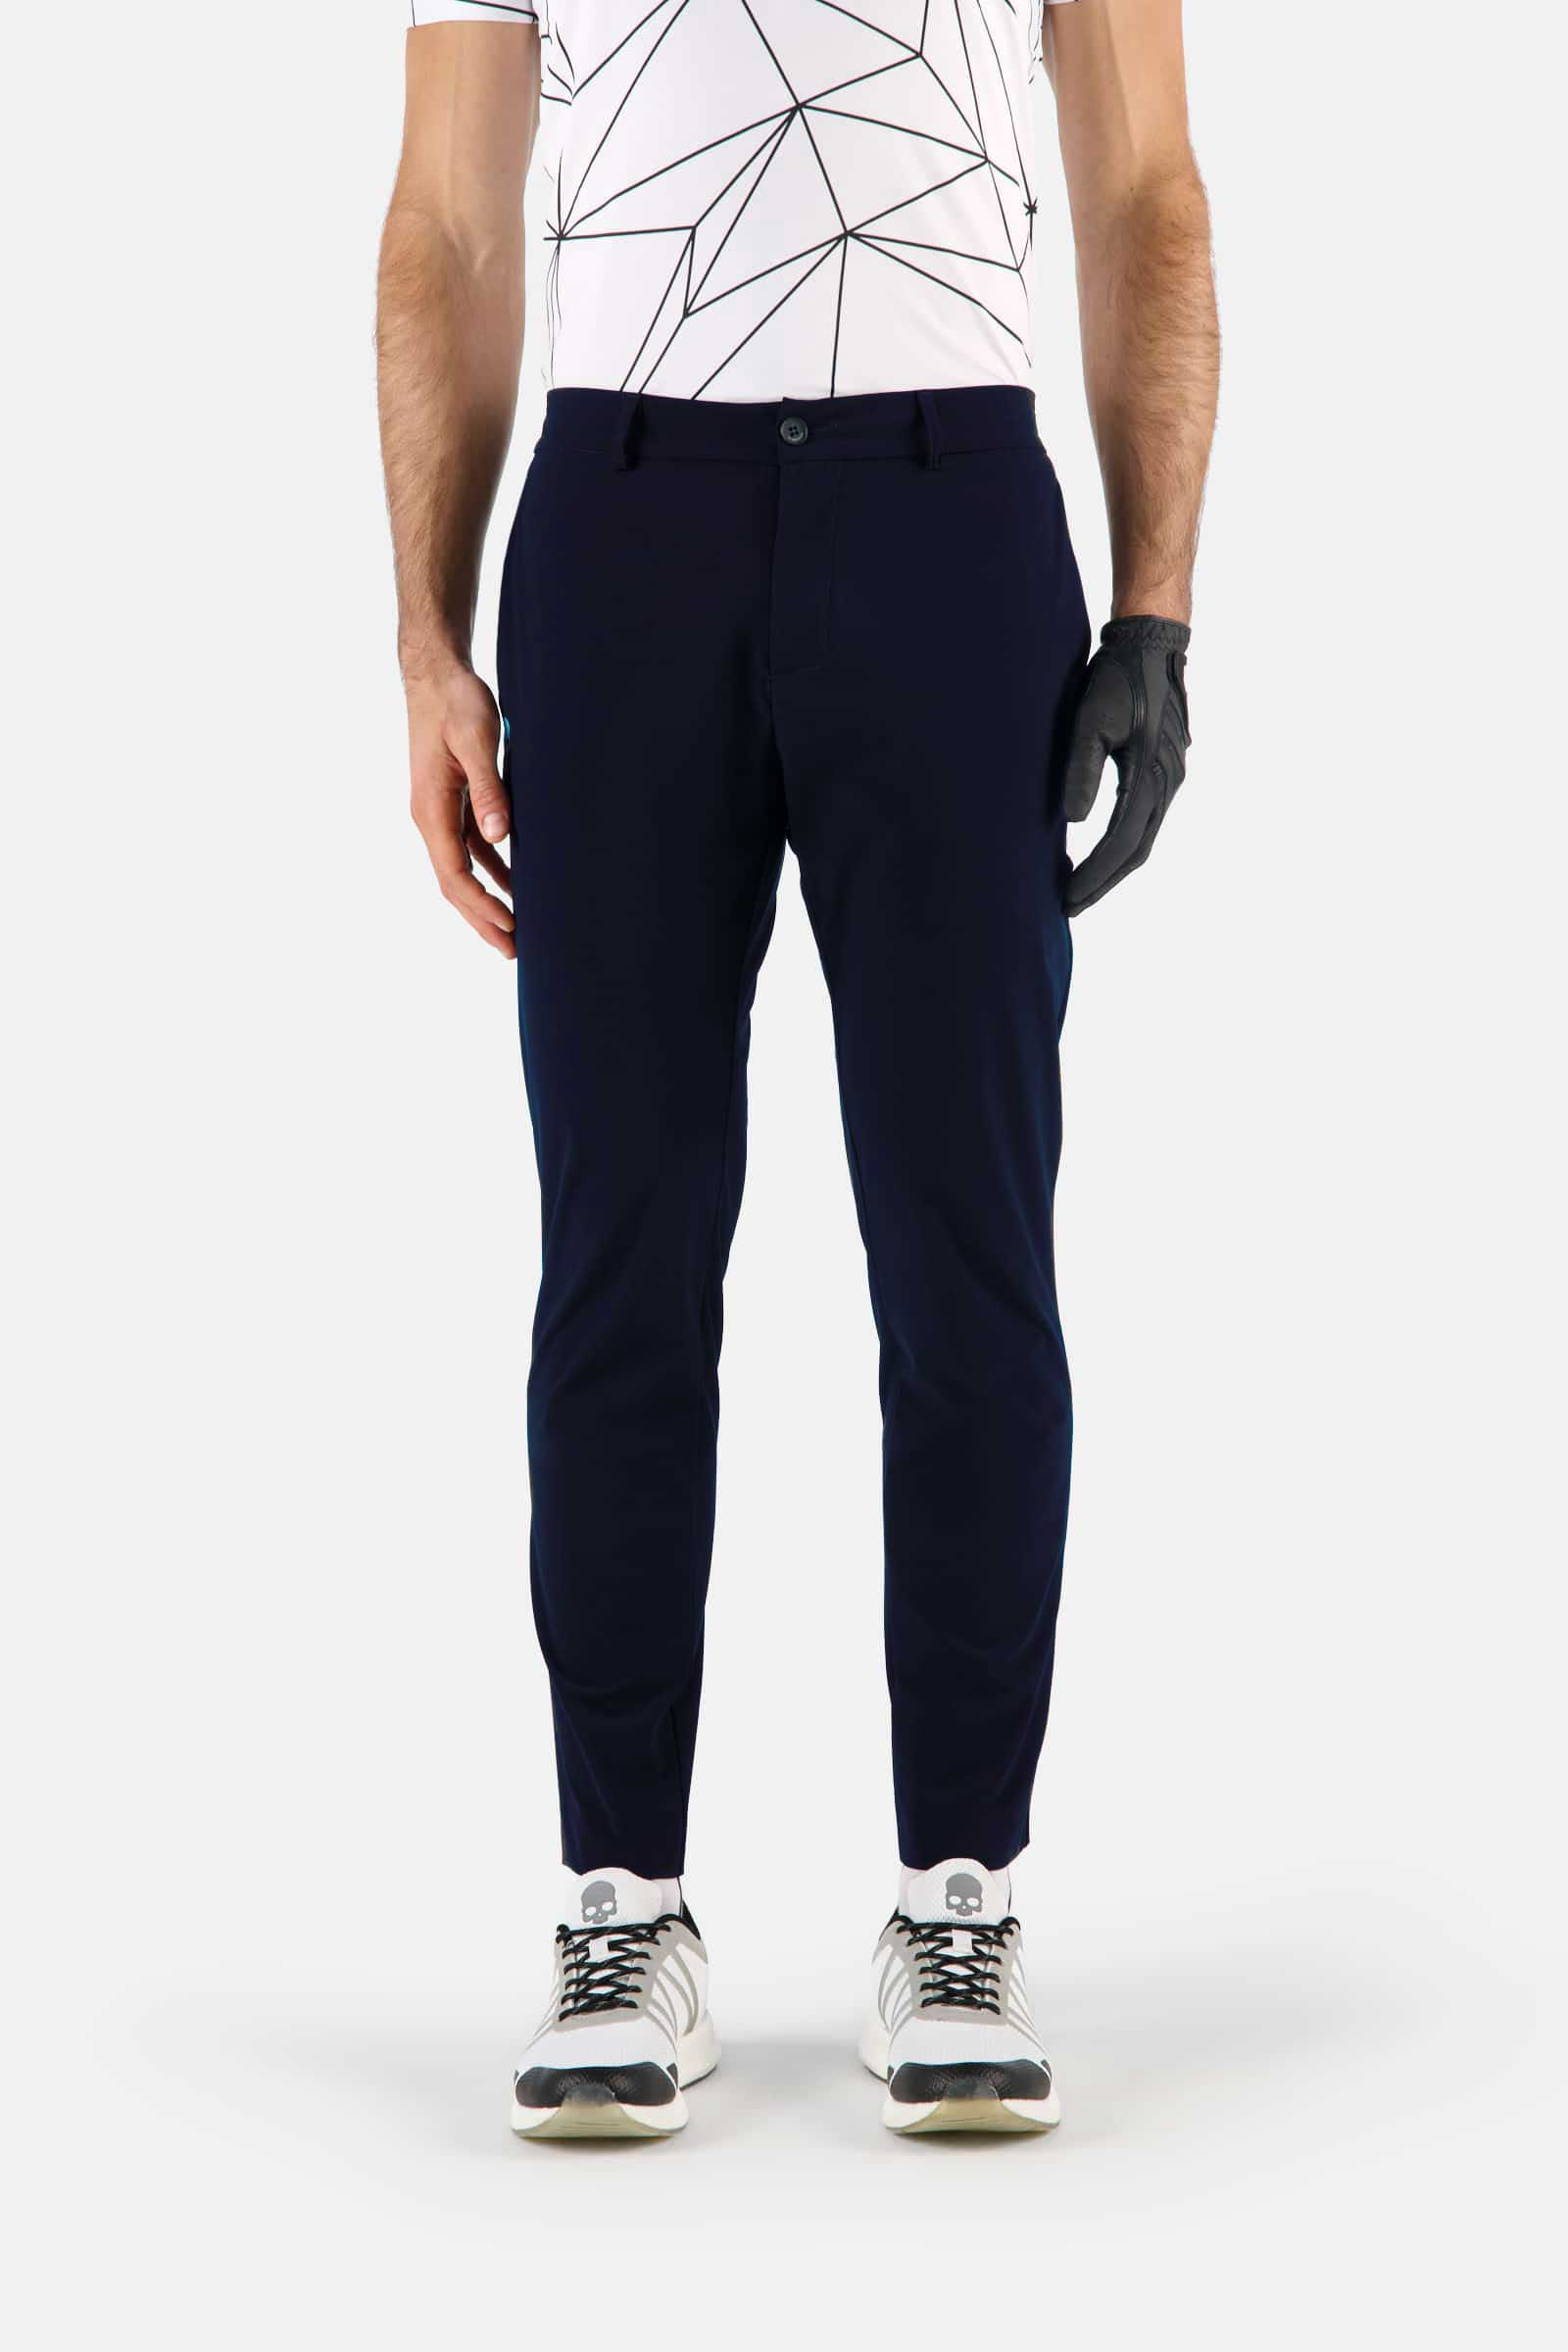 GOLF PANTS - Apparel - Hydrogen - Luxury Sportwear